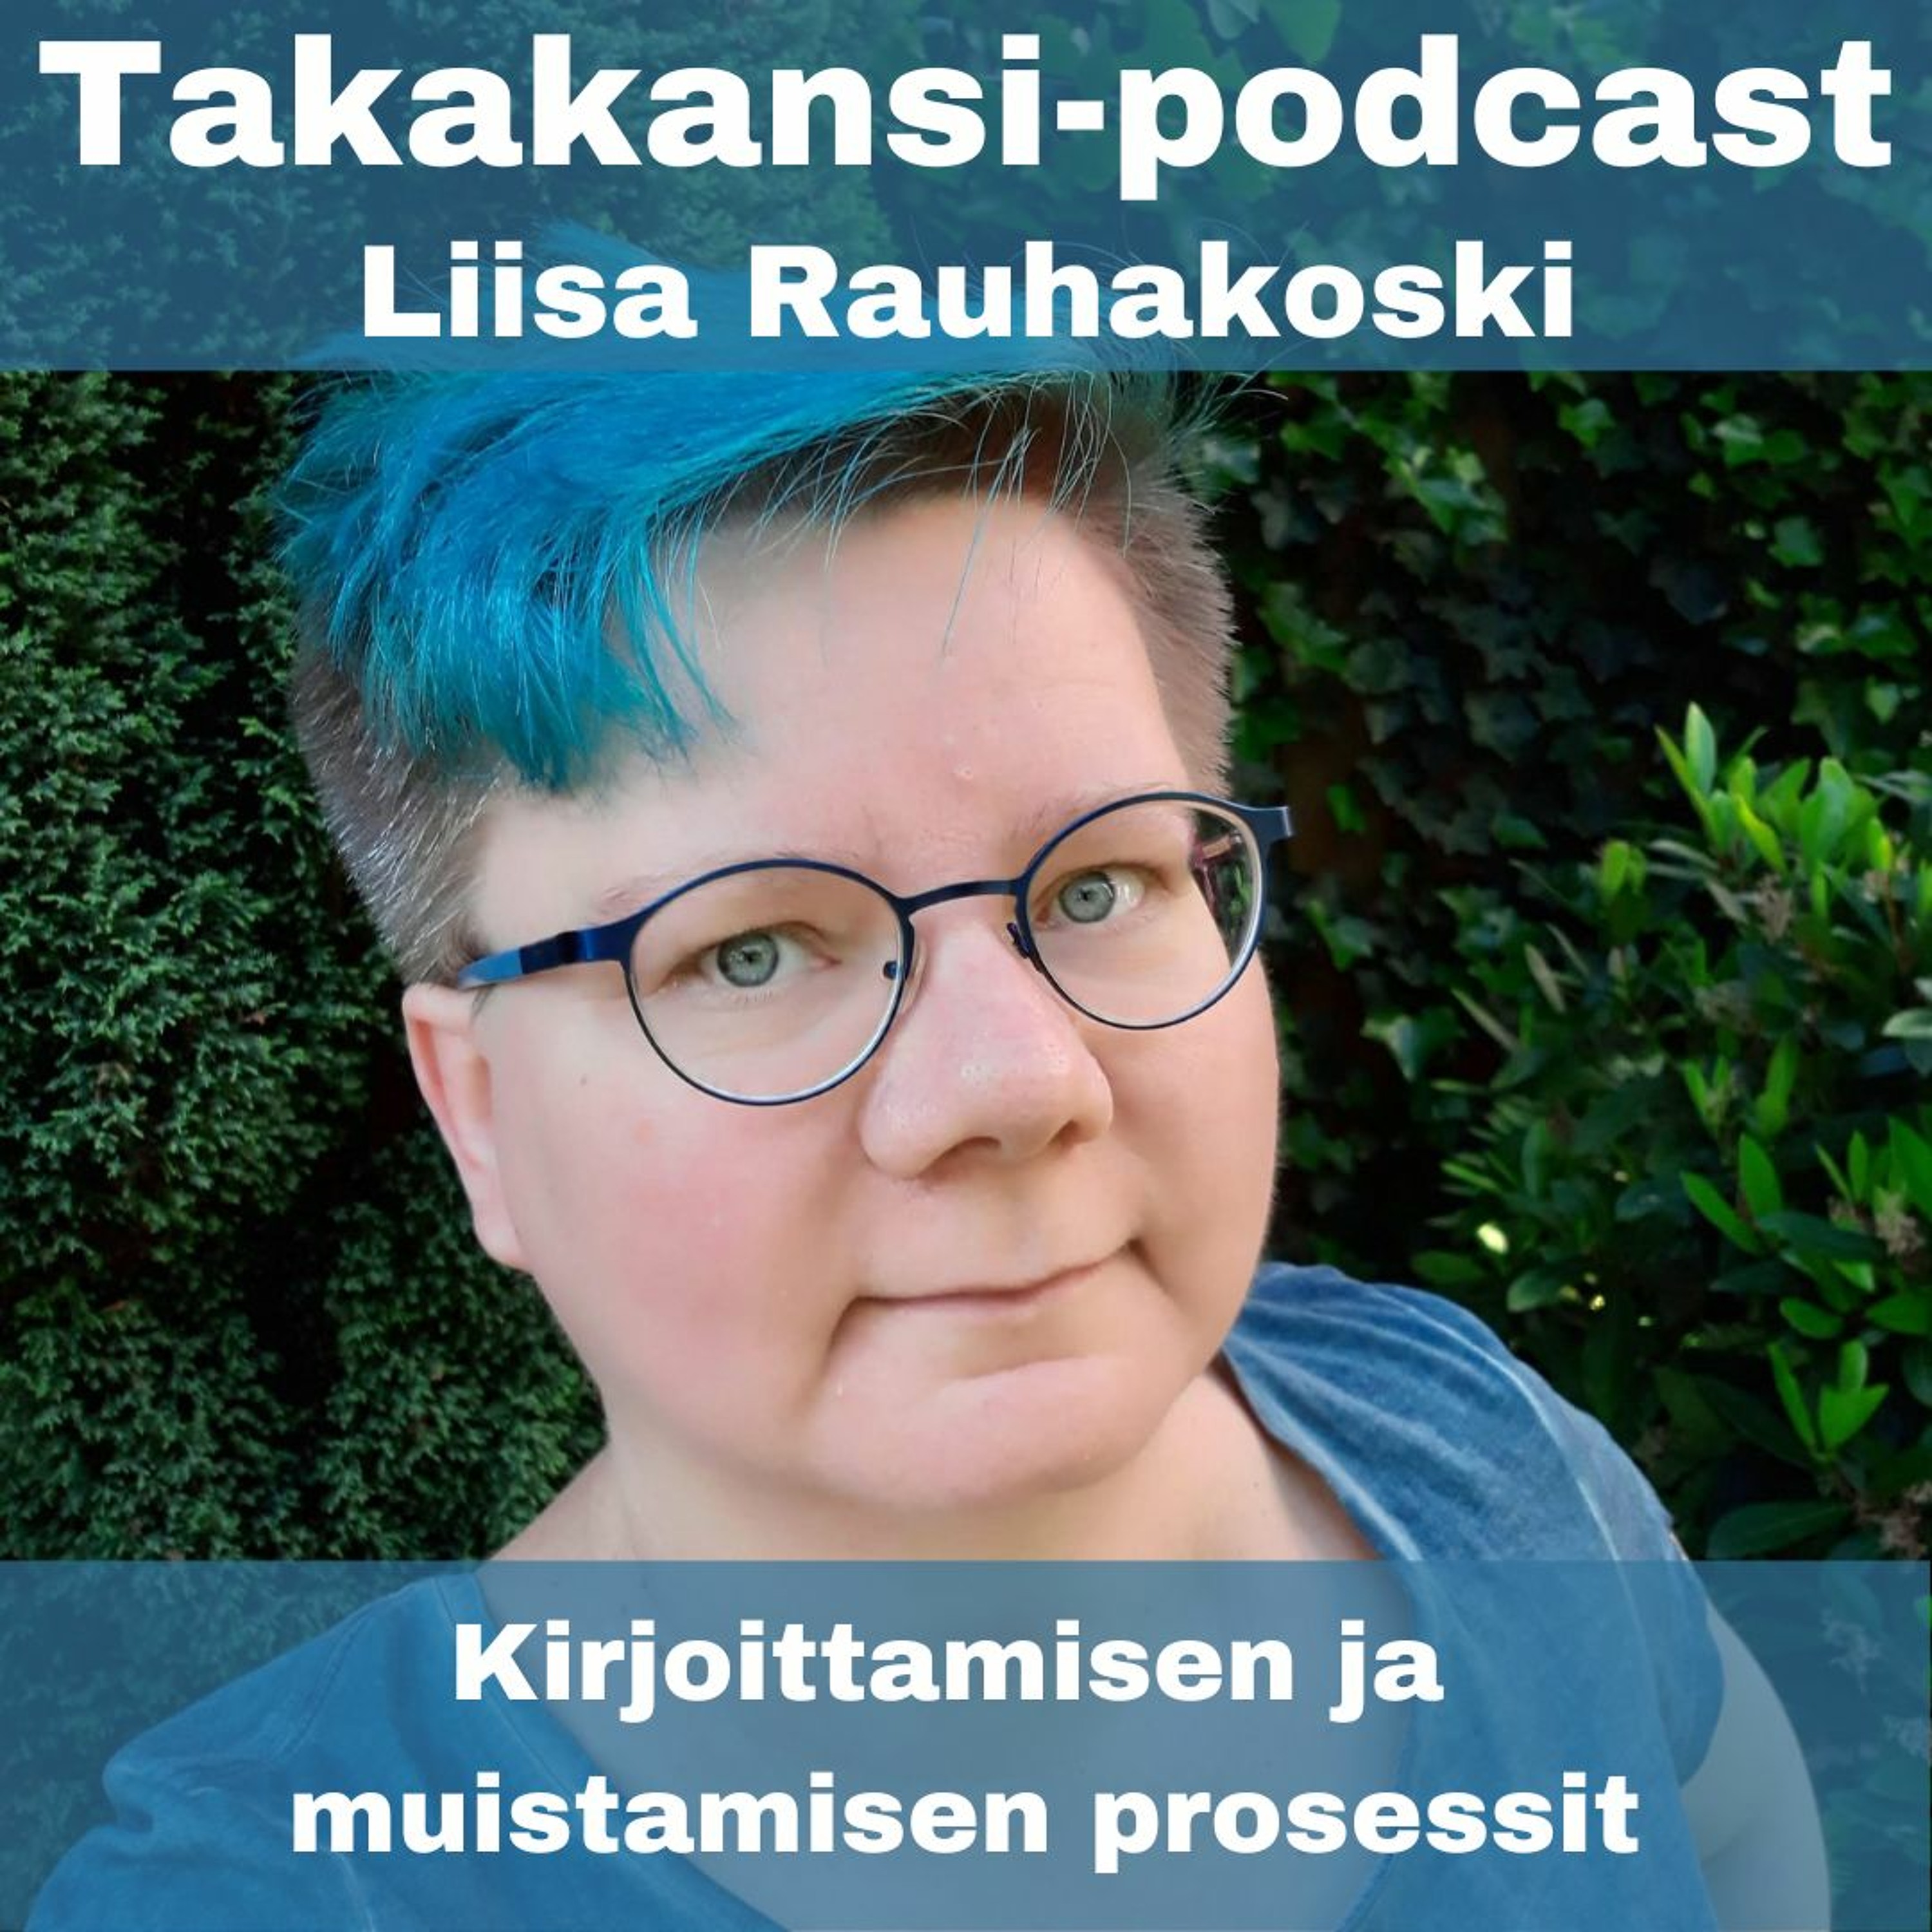 Liisa Rauhakoski - Kirjoittamisen ja muistamisen prosessit - livepodcast